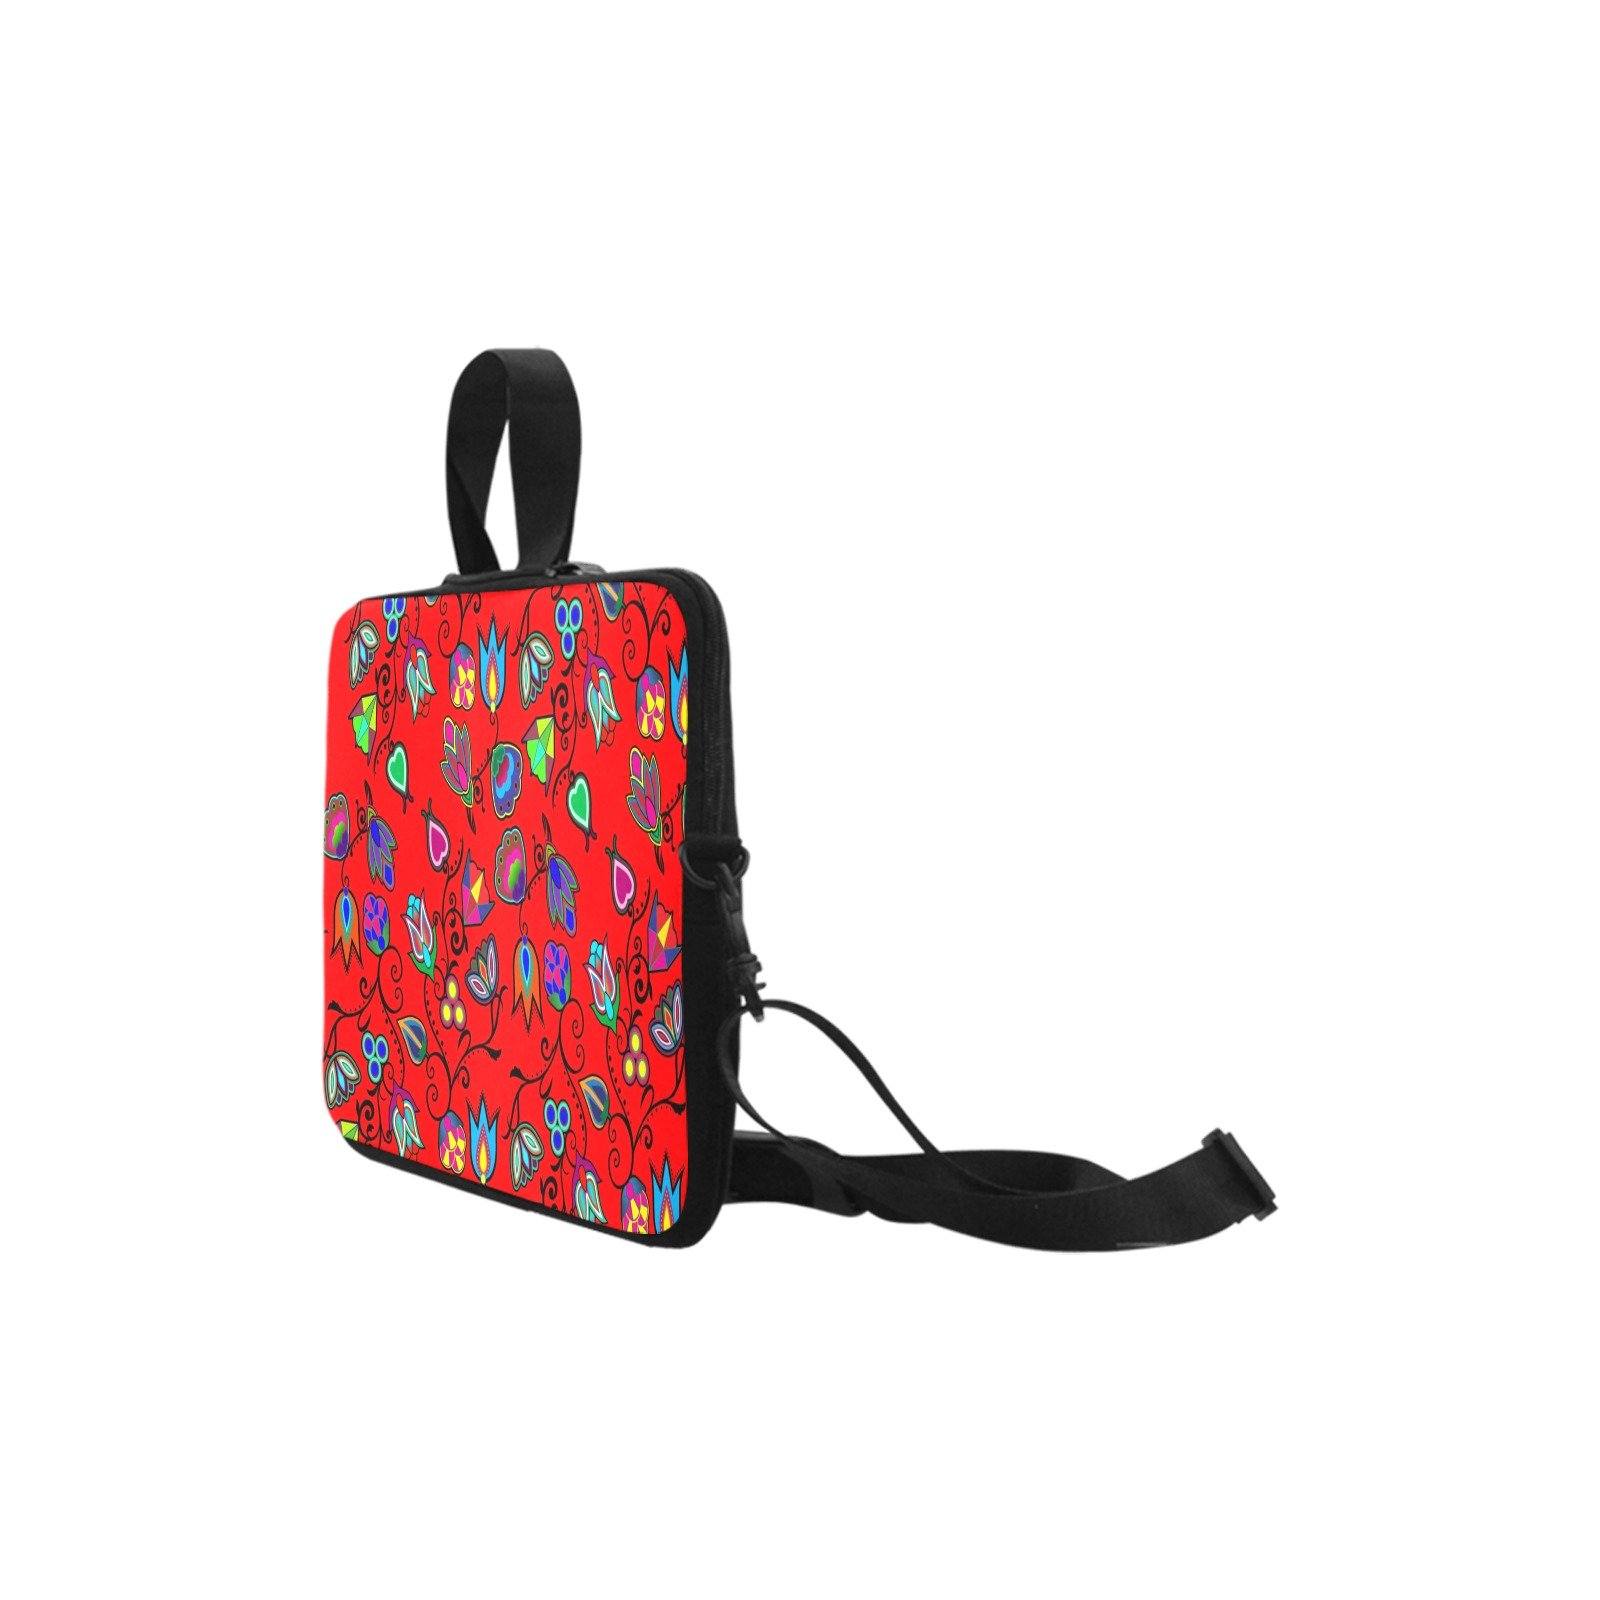 Indigenous Paisley Dahlia Laptop Handbags 11" bag e-joyer 